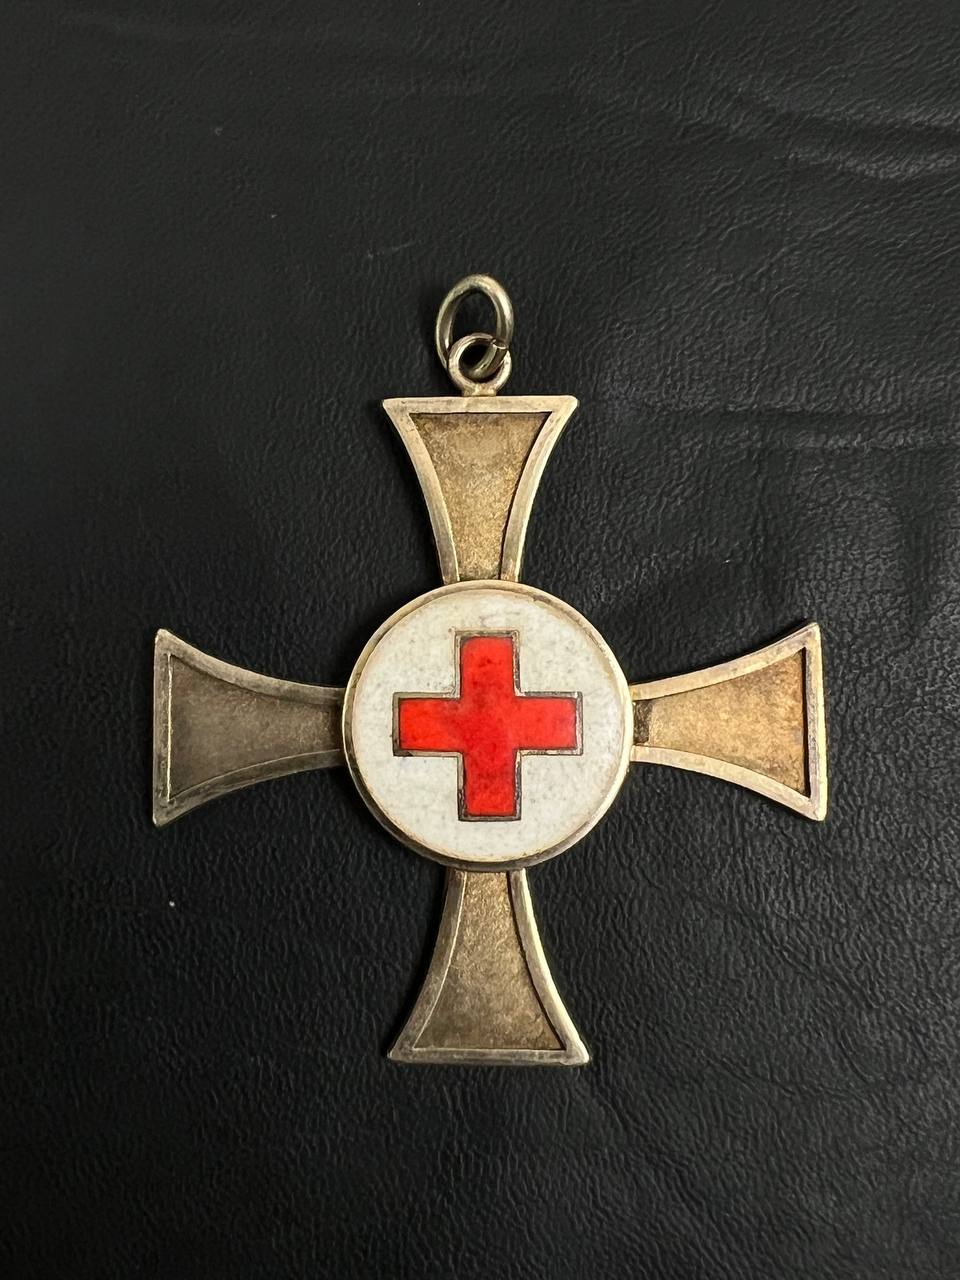 Сестринский крест (DRK – Deutsches Rotes Kreuz) в золоте 1922 г. за 25 лет службы. От Алексея С.